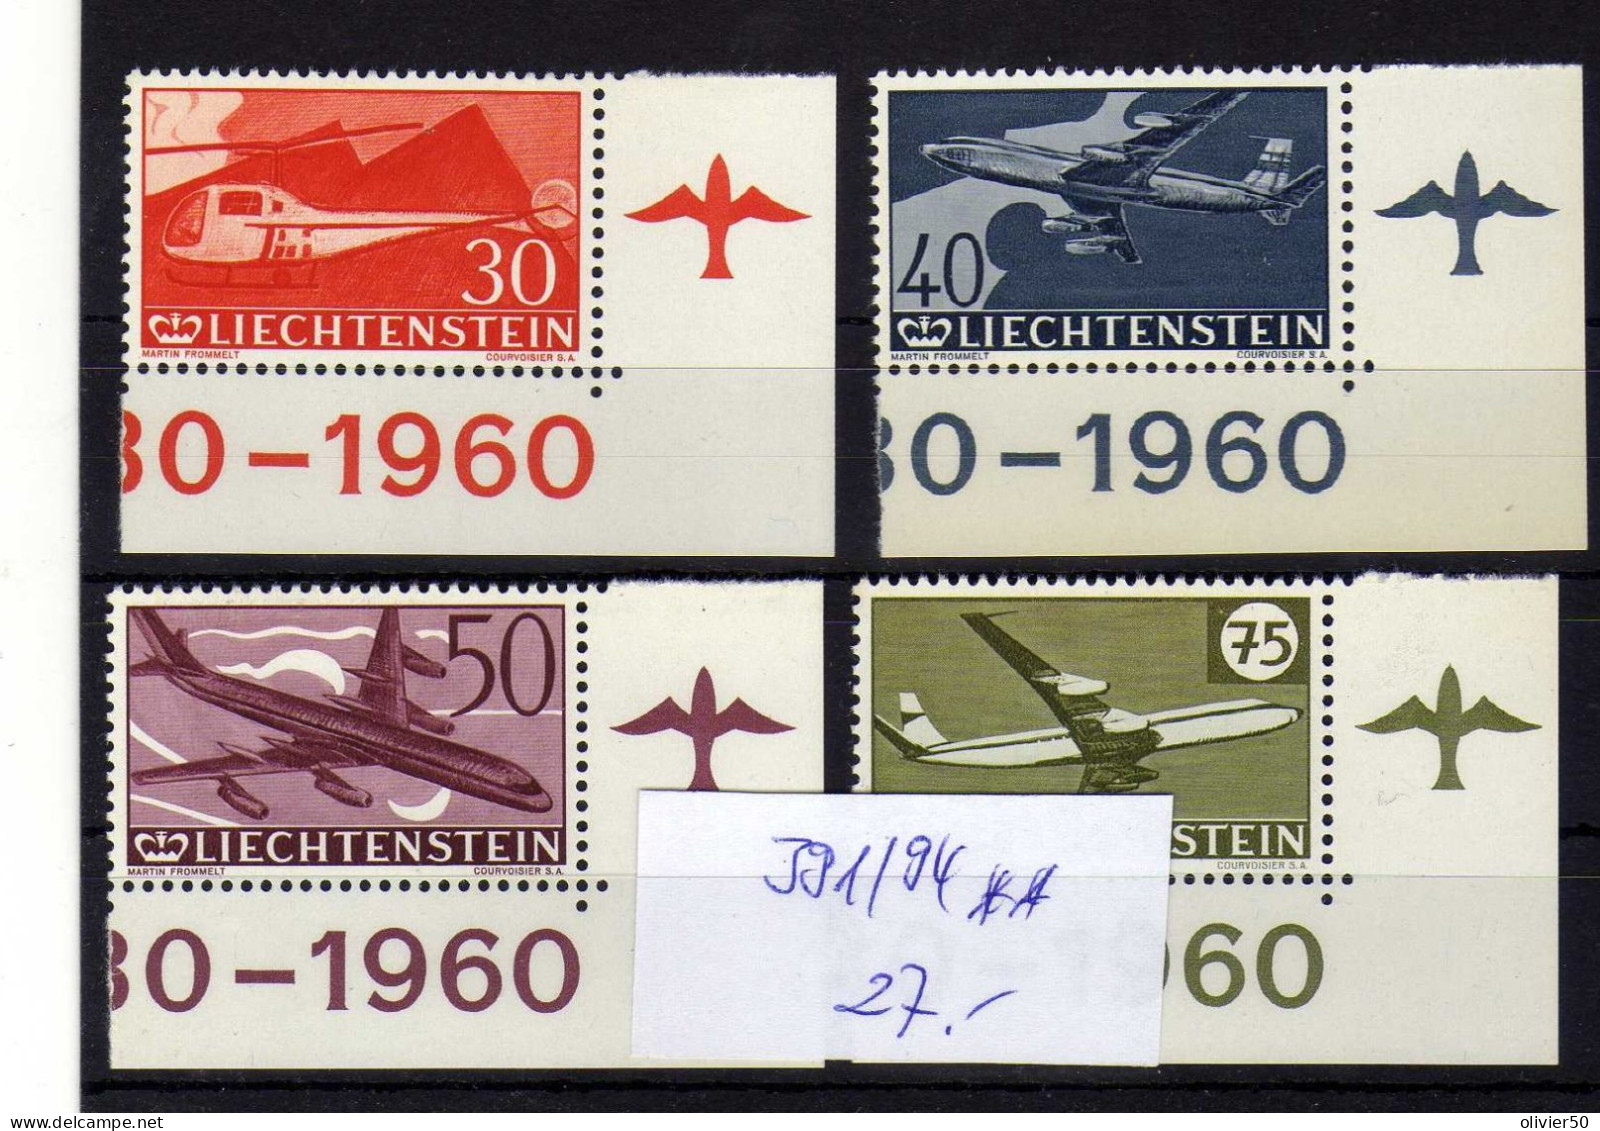 Liechtenstein (1960) - 30e Anniversaire Du Timbre Aerien -  Neufs** - MNH - Poste Aérienne